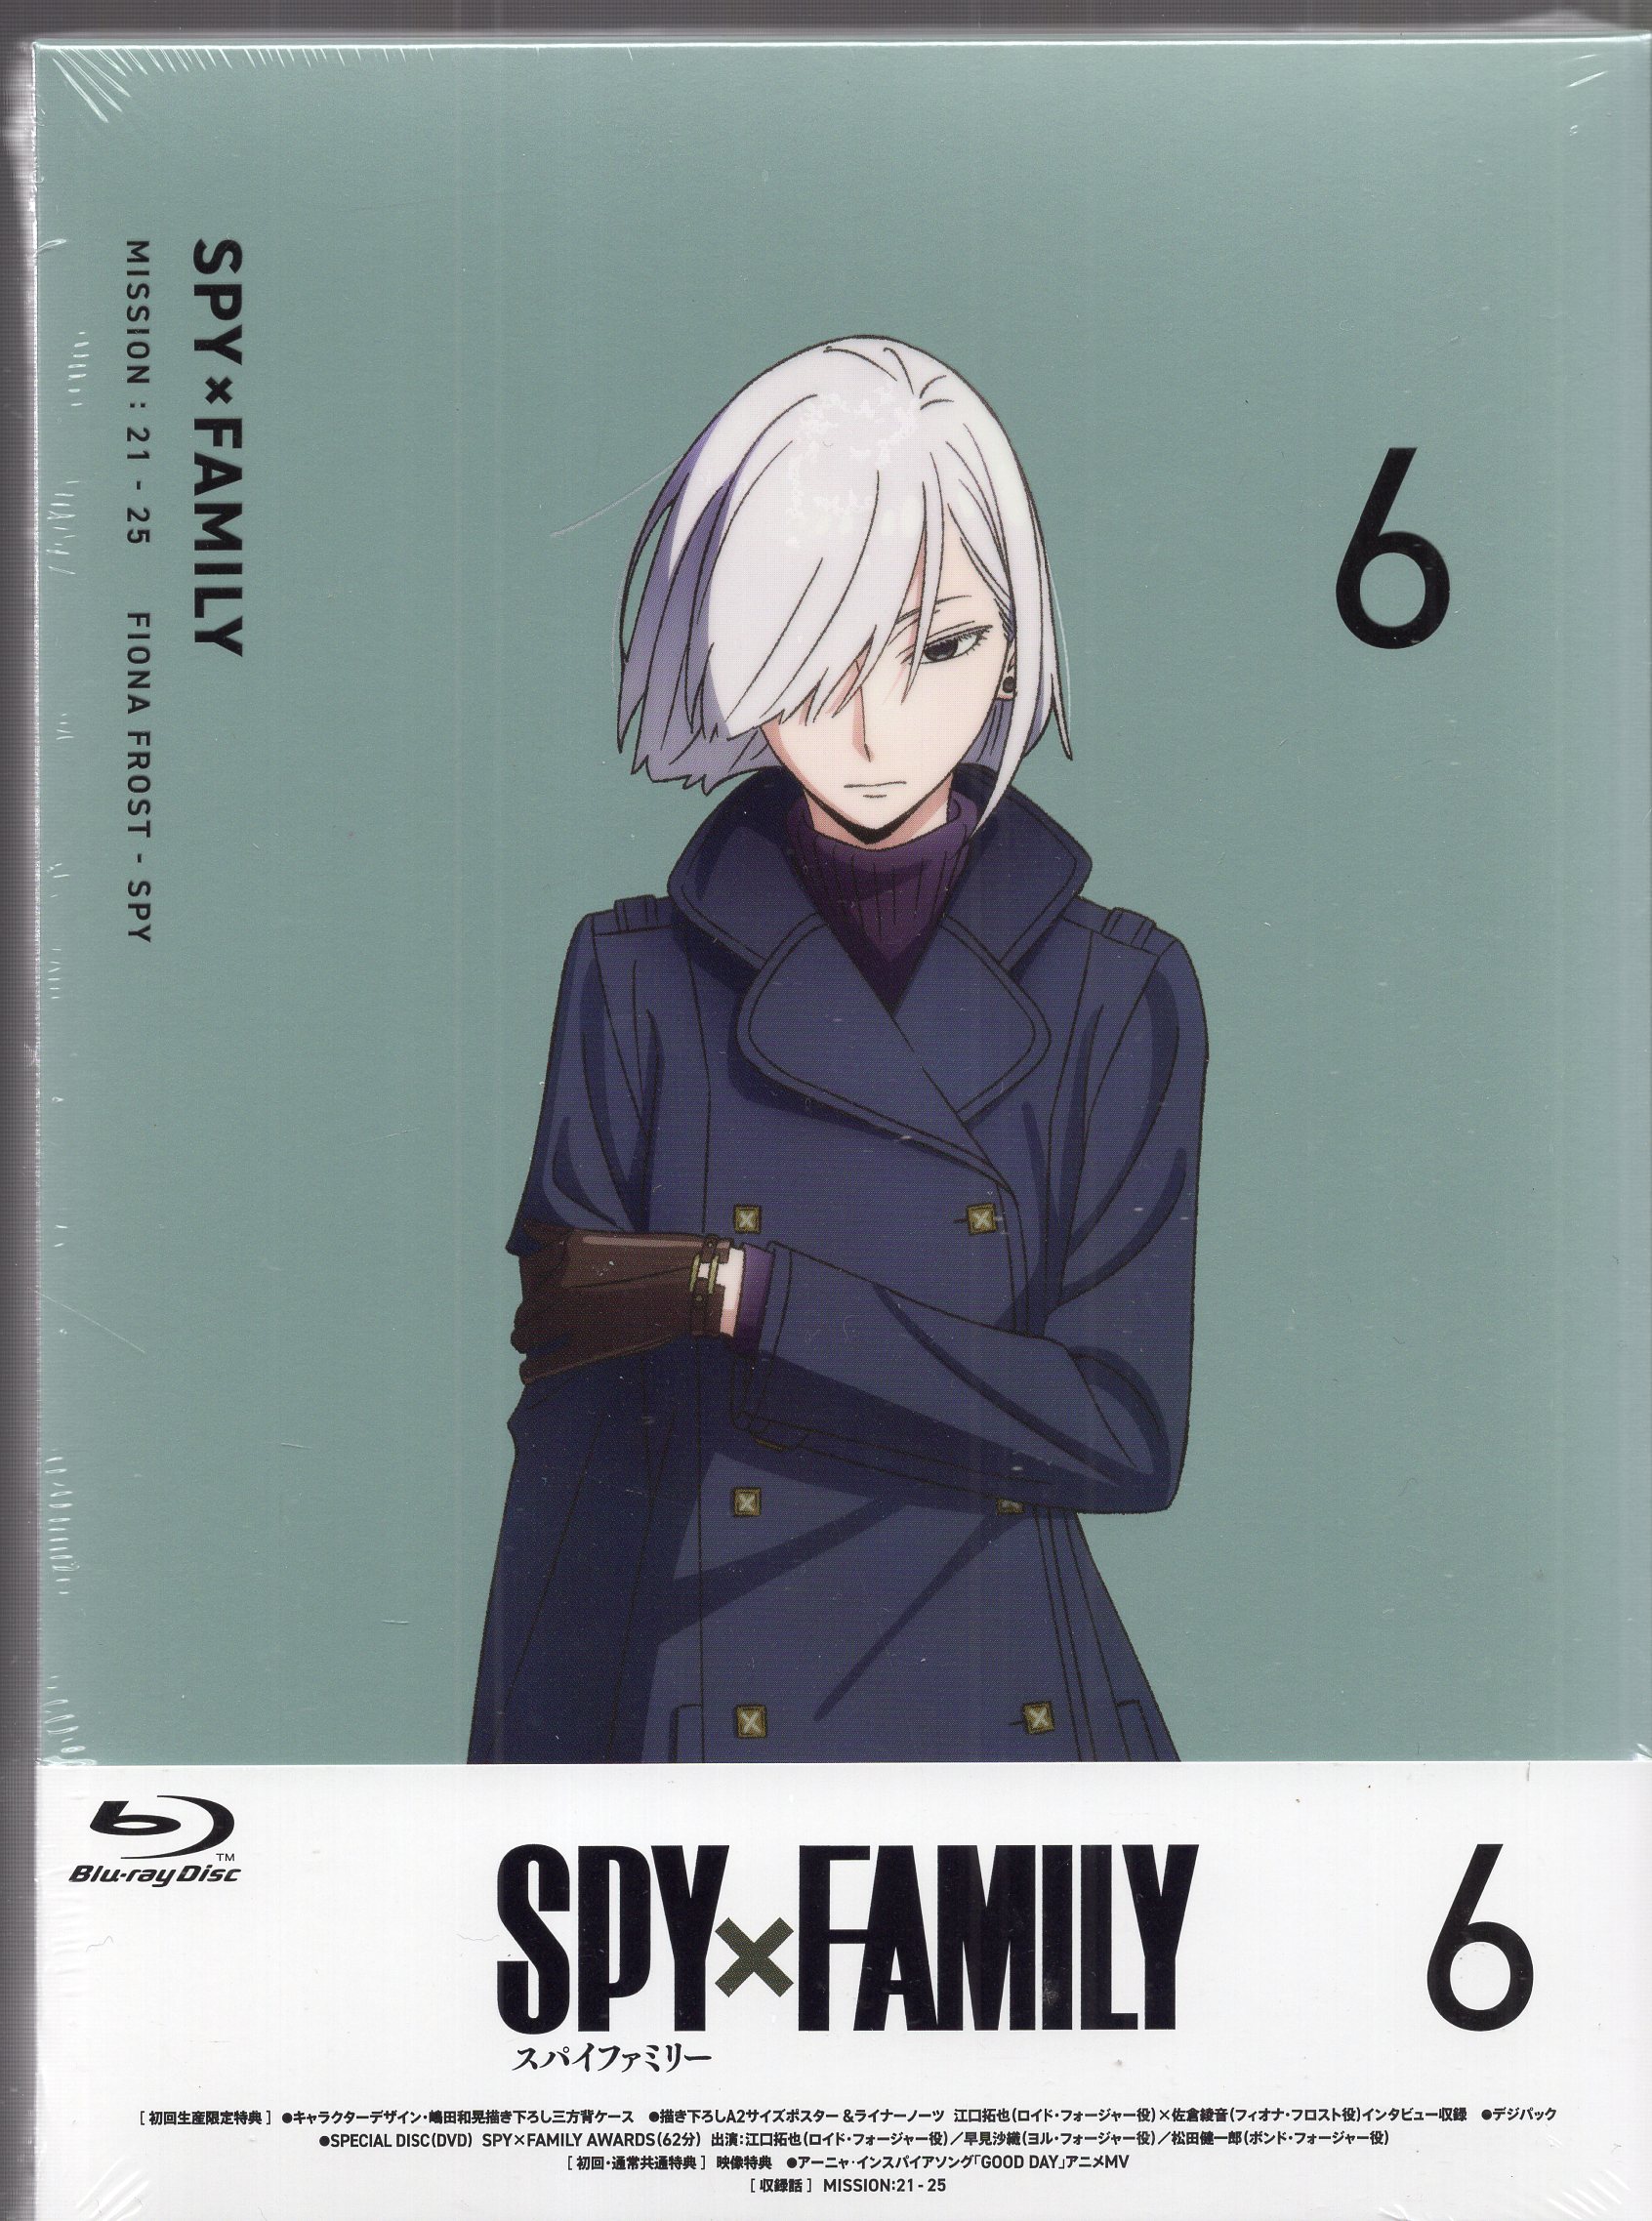 アニメBlu-ray SPY×FAMILY 初回生産限定版 1期全6巻 セット